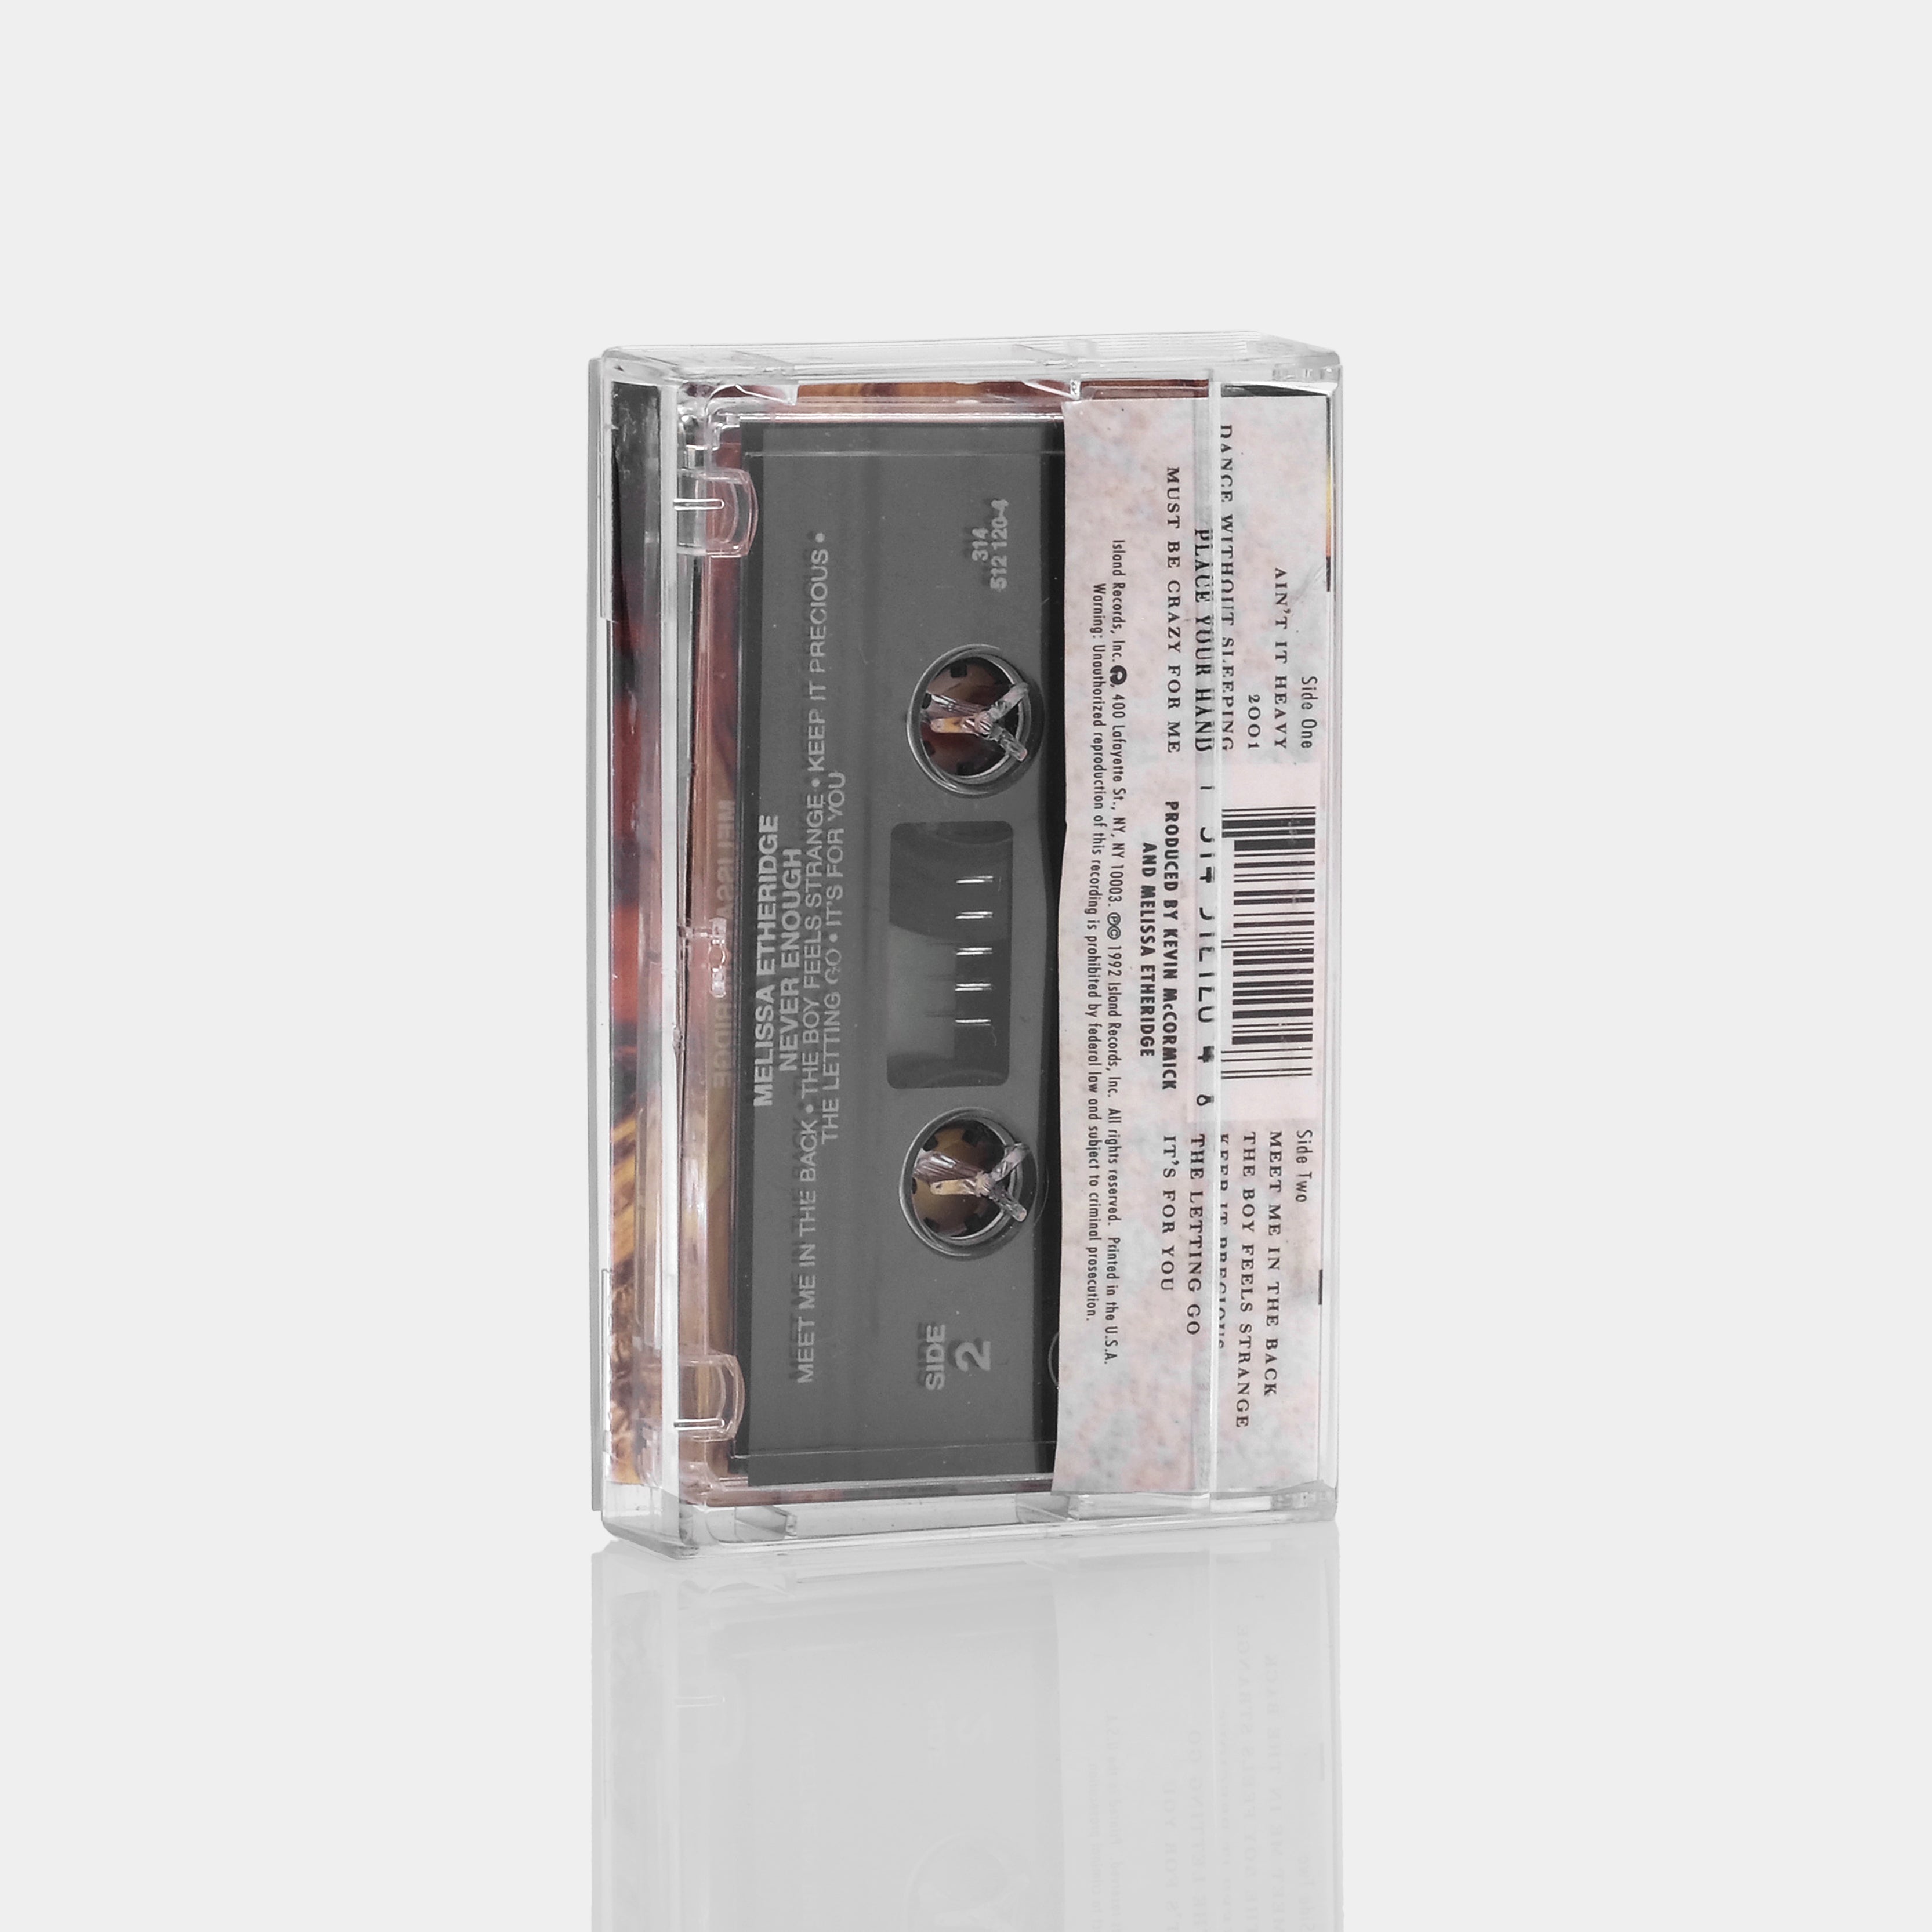 Melissa Etheridge - Never Enough Cassette Tape